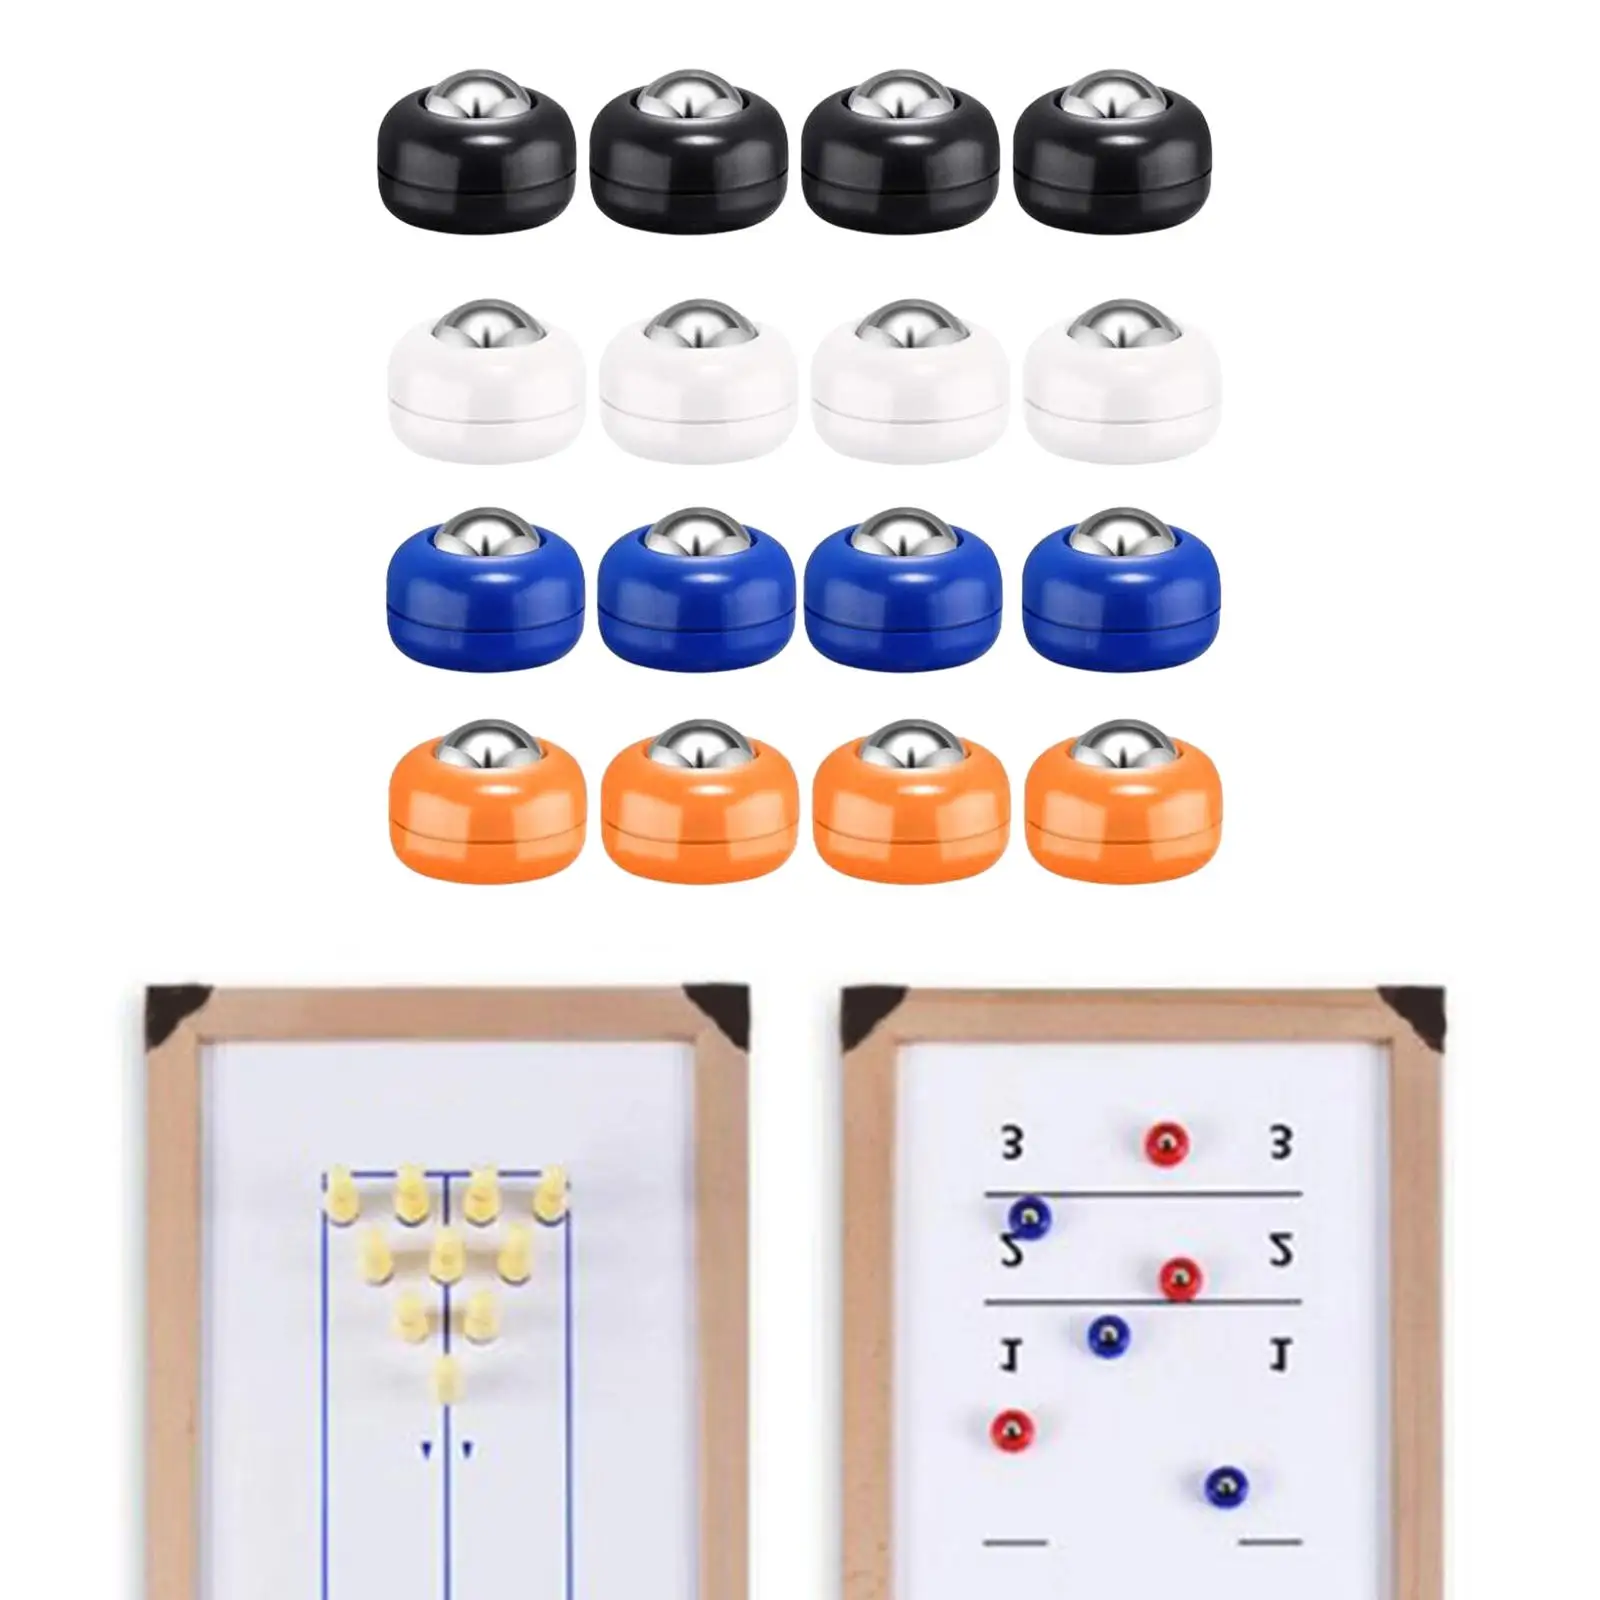 16x Shuffleboard Pucks Shuffleboard Curling Accessories 4 Colors Shuffleboard Table Pucks for Shuffleboard Enthusiasts Playing